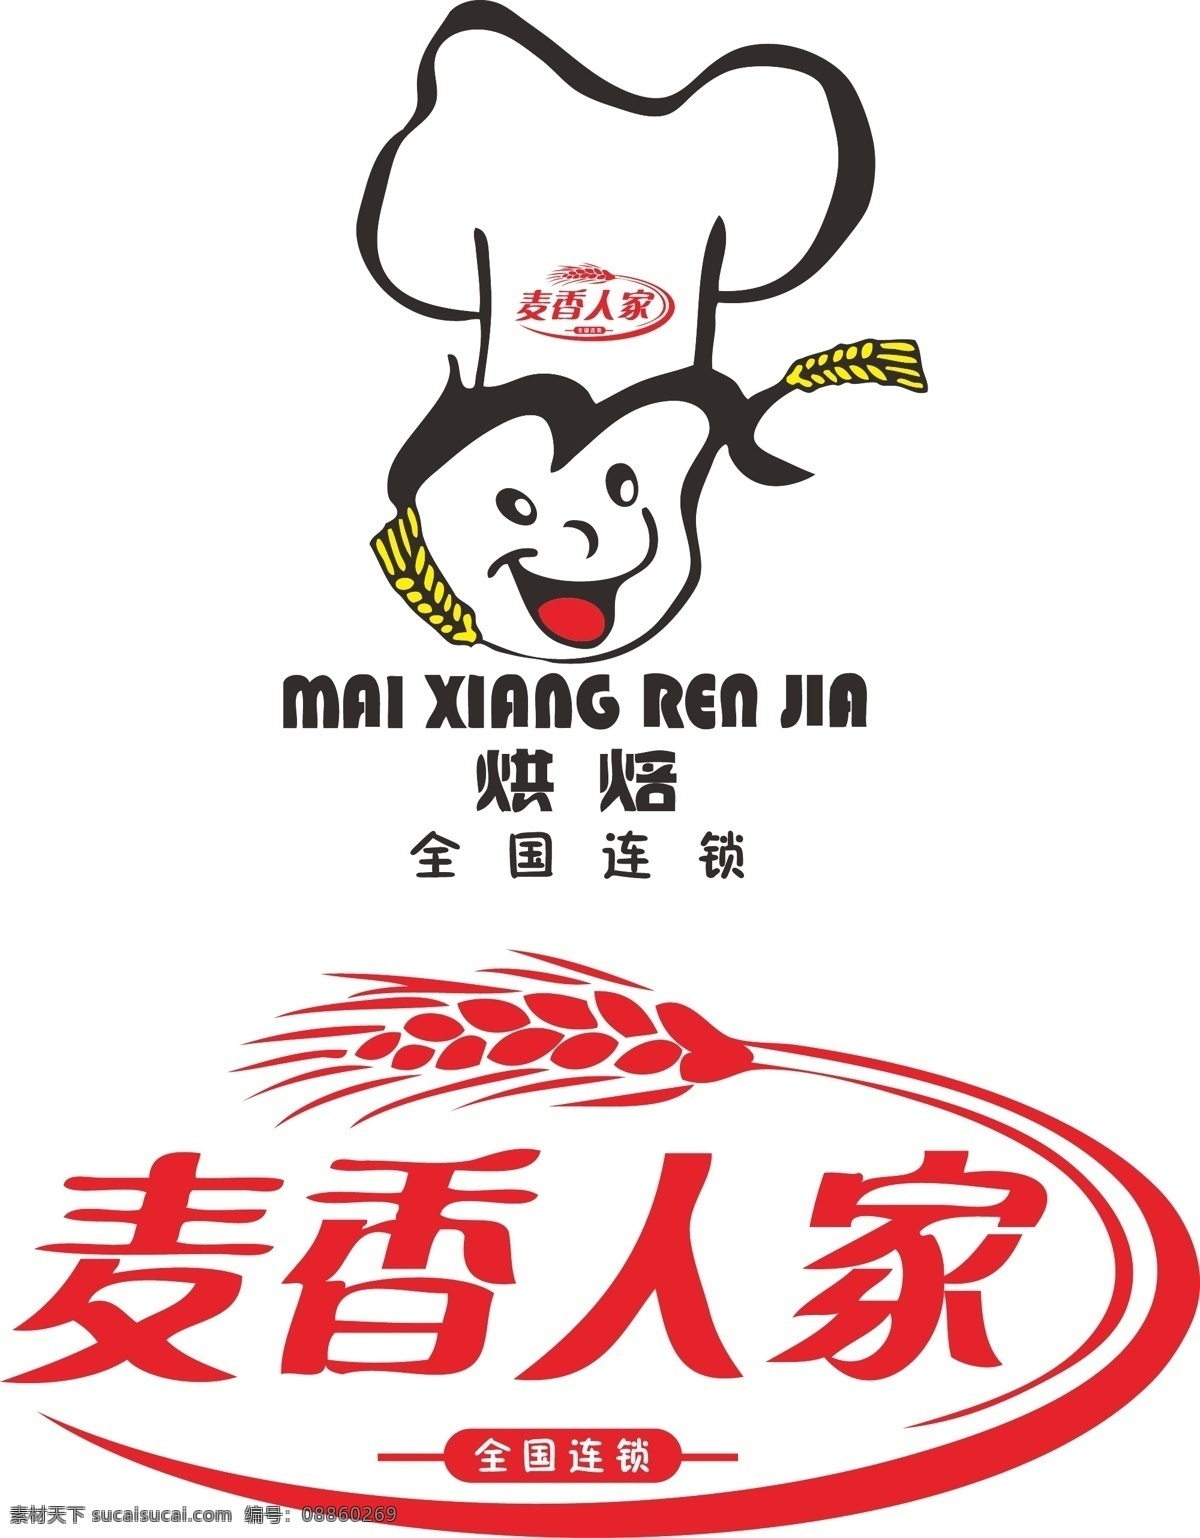 麦香 人家 企业 logo 标志 矢量图 麦香人家 麦香村 企业logo 标识标志图标 矢量